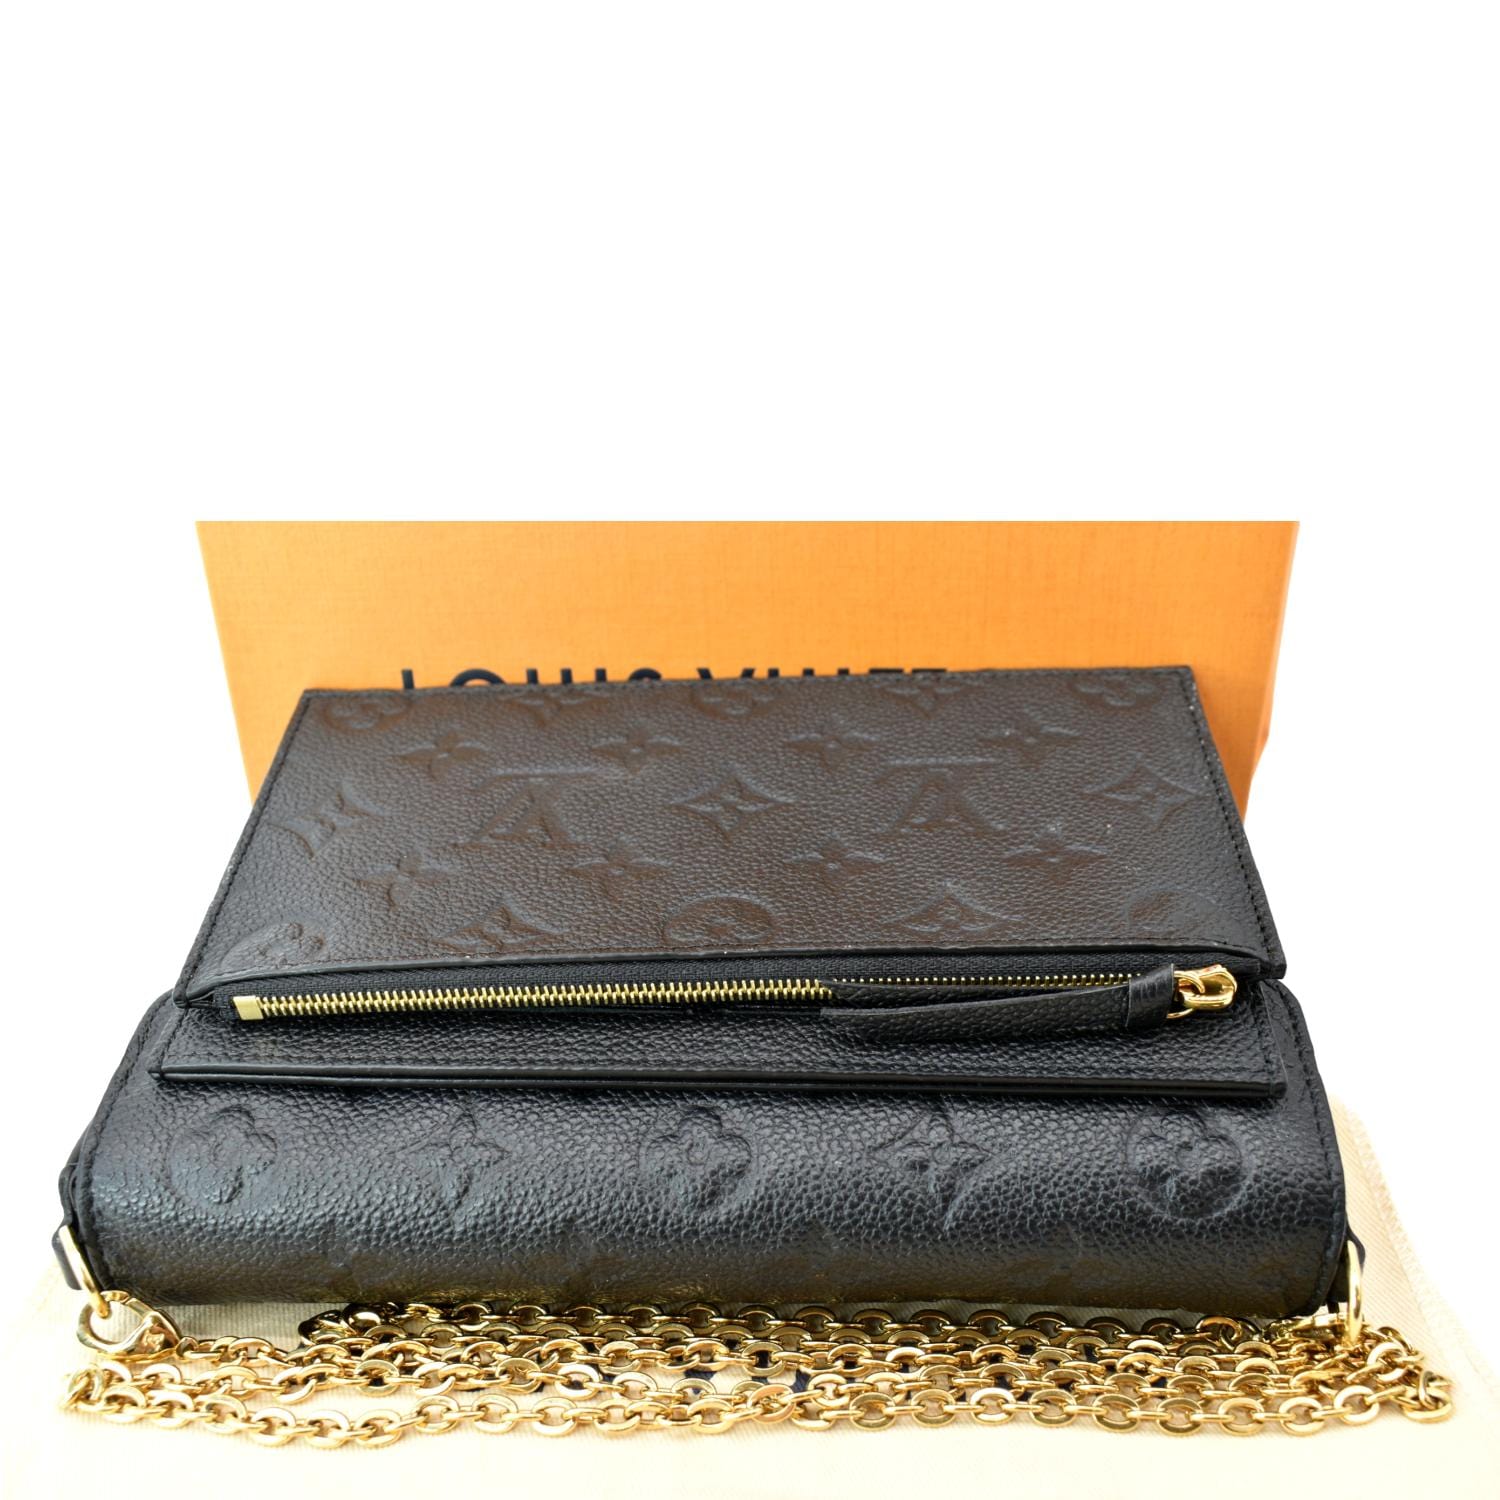 Louis Vuitton Black Empreinte Leather Compact Curieuse Wallet - A